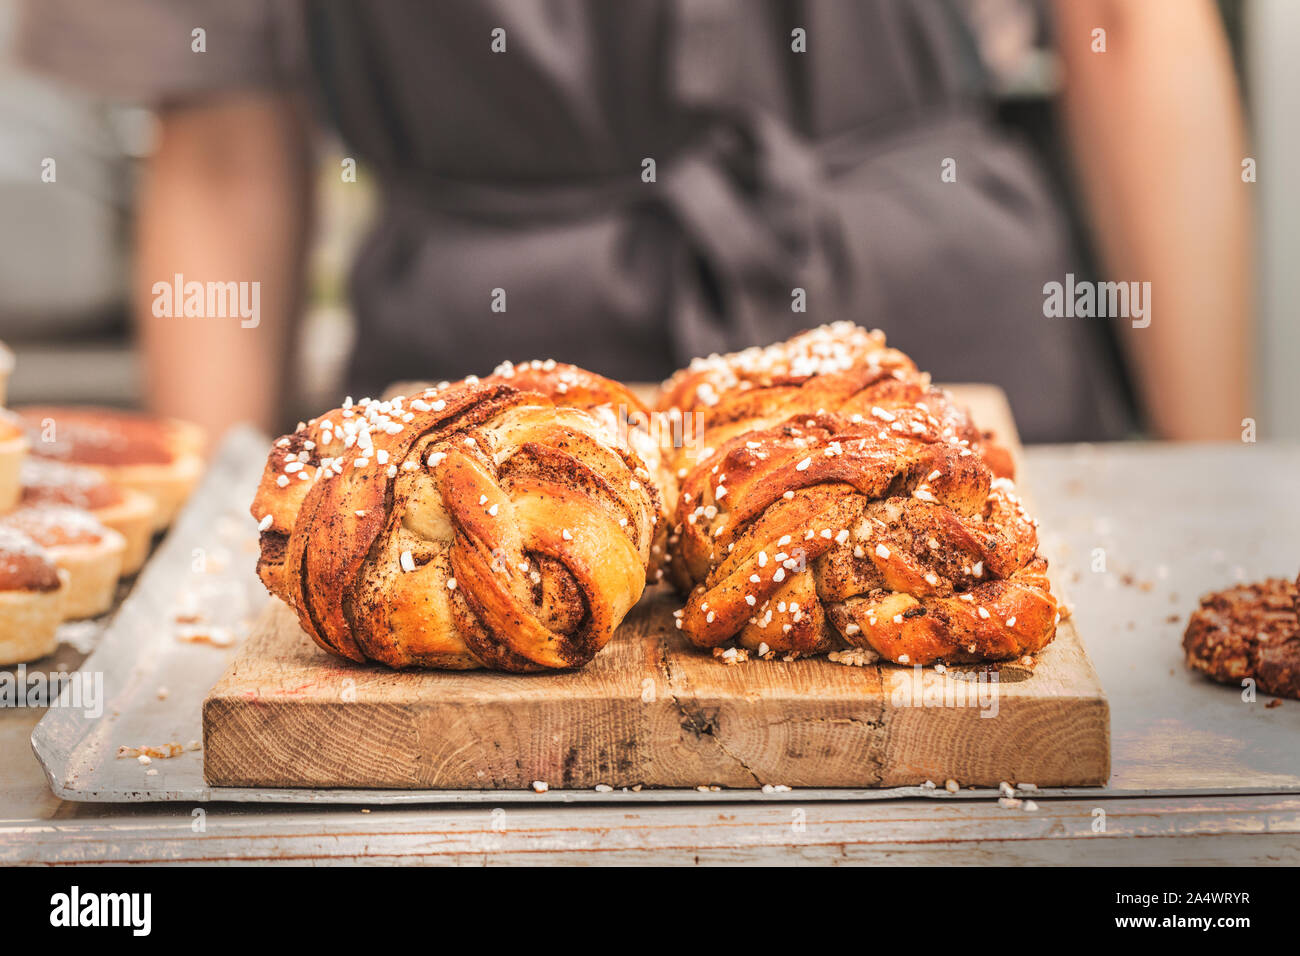 Twisted brioches à la cannelle suédois traditionnel dans un café. Les pains sucrés sont sur une planche en bois, et il y a une personne méconnaissable avec un TEG Banque D'Images